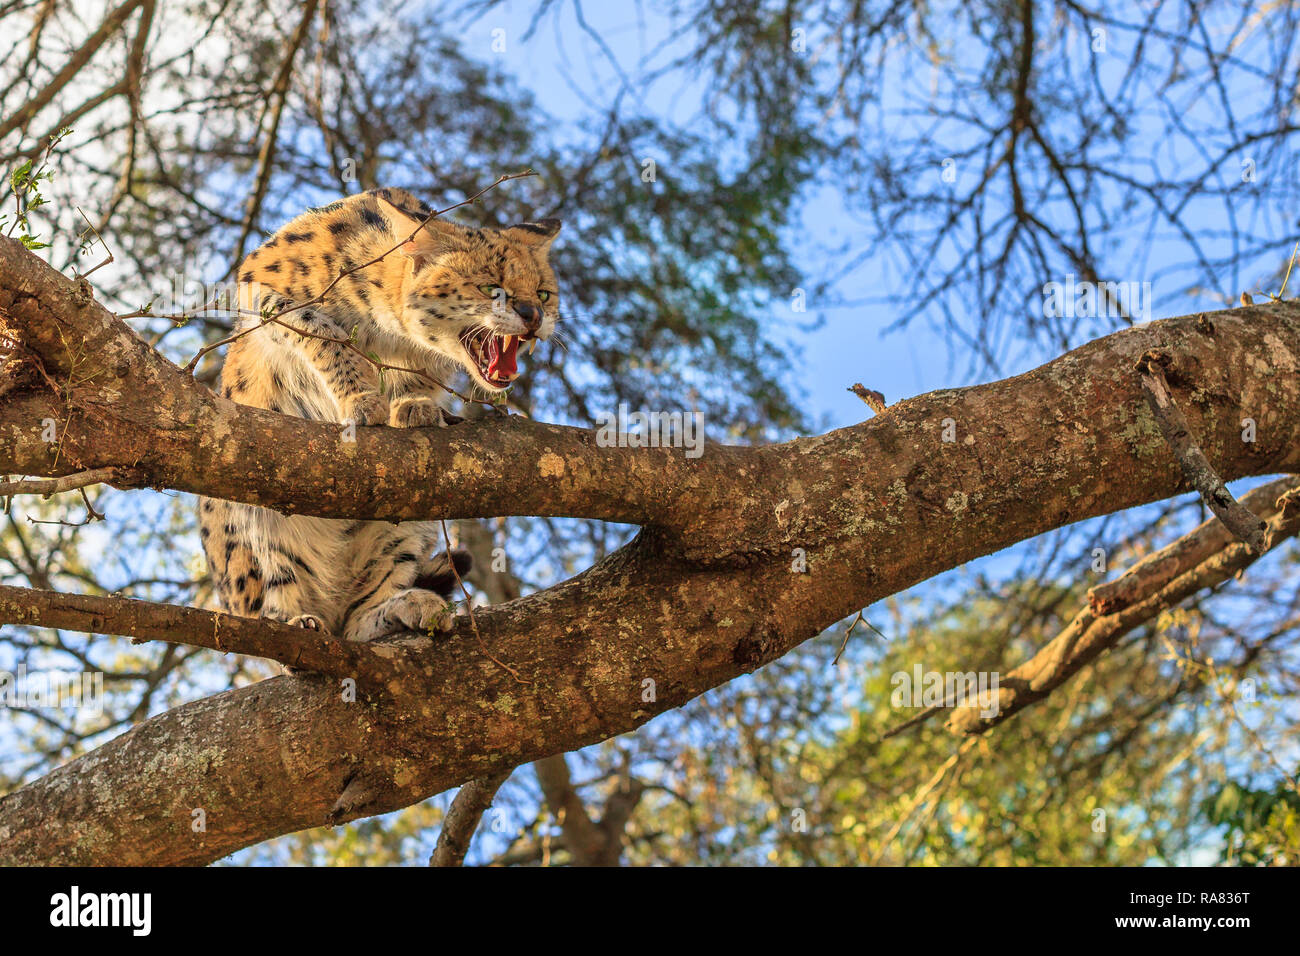 Un aggressivo Serval, nome scientifico Leptailurus serval, con la sua bocca aperta su un albero in natura. Il Serval è un macchiato il gatto selvatico nativa per l'Africa. Foto Stock